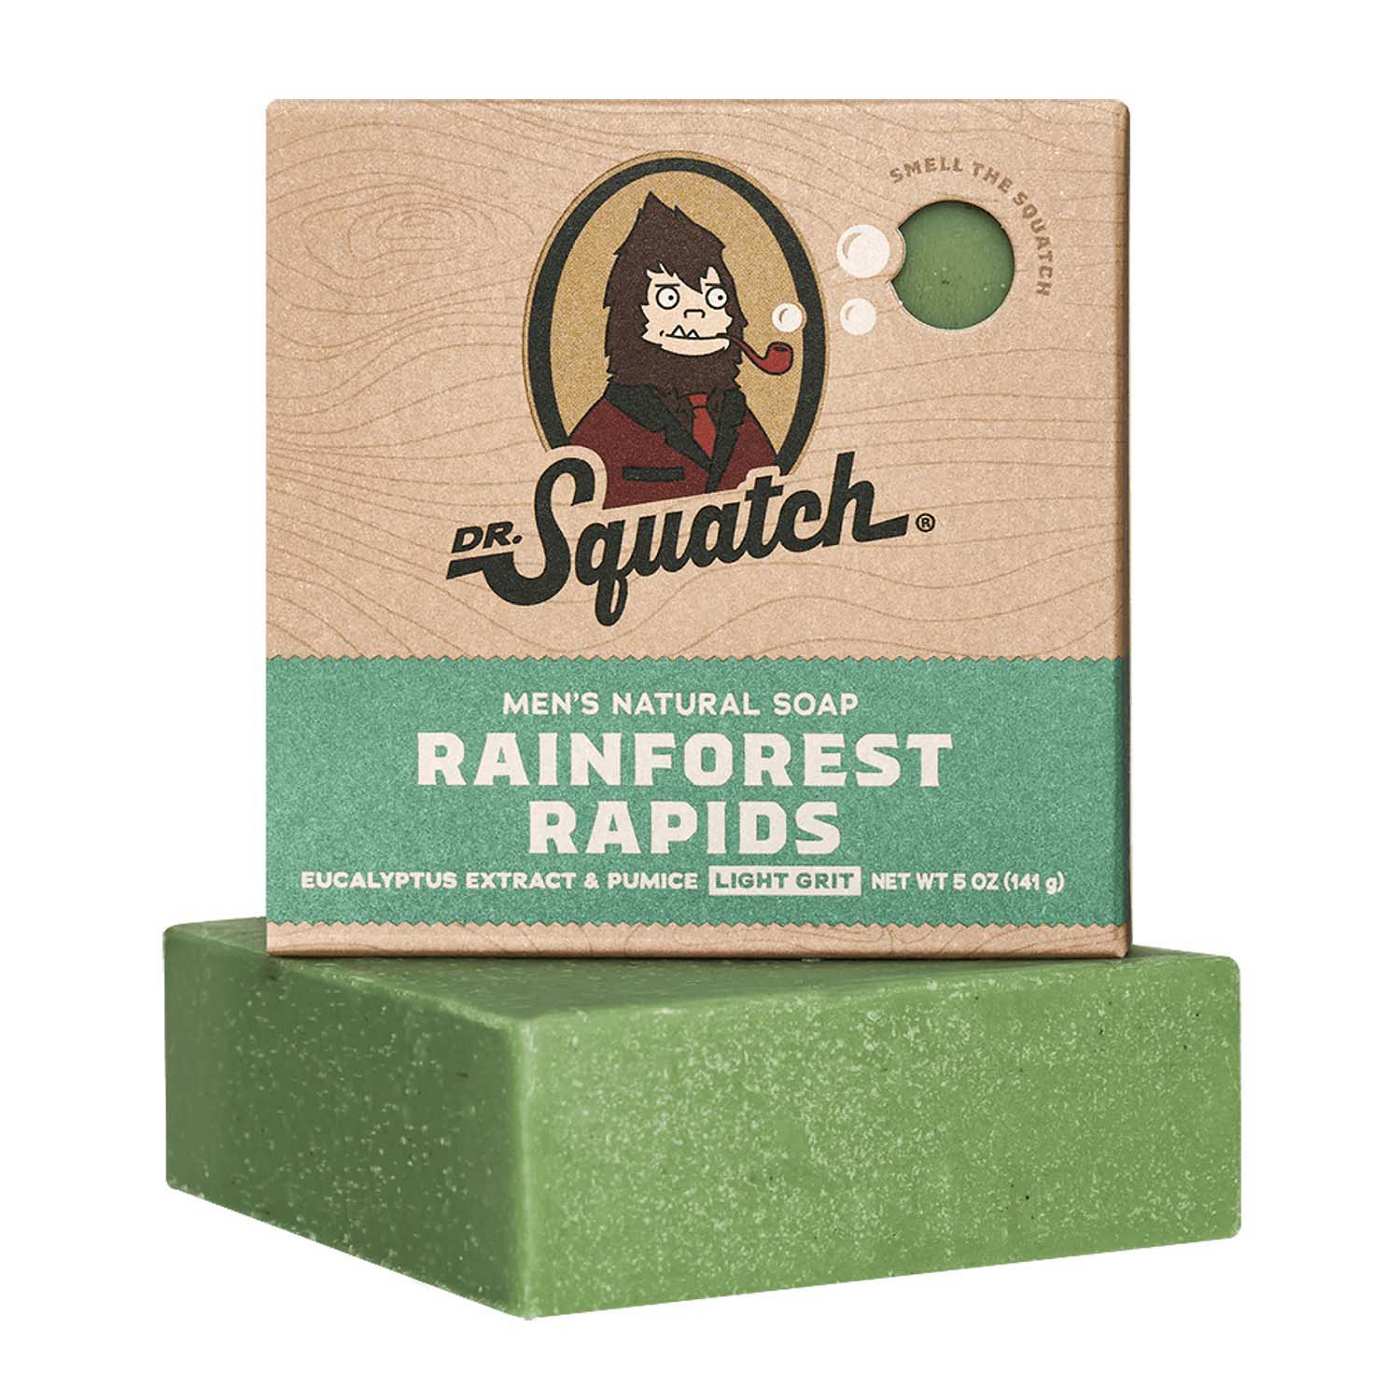 Dr. Squatch Men's Natural Bar Soap - Rainforest Rapids; image 2 of 4